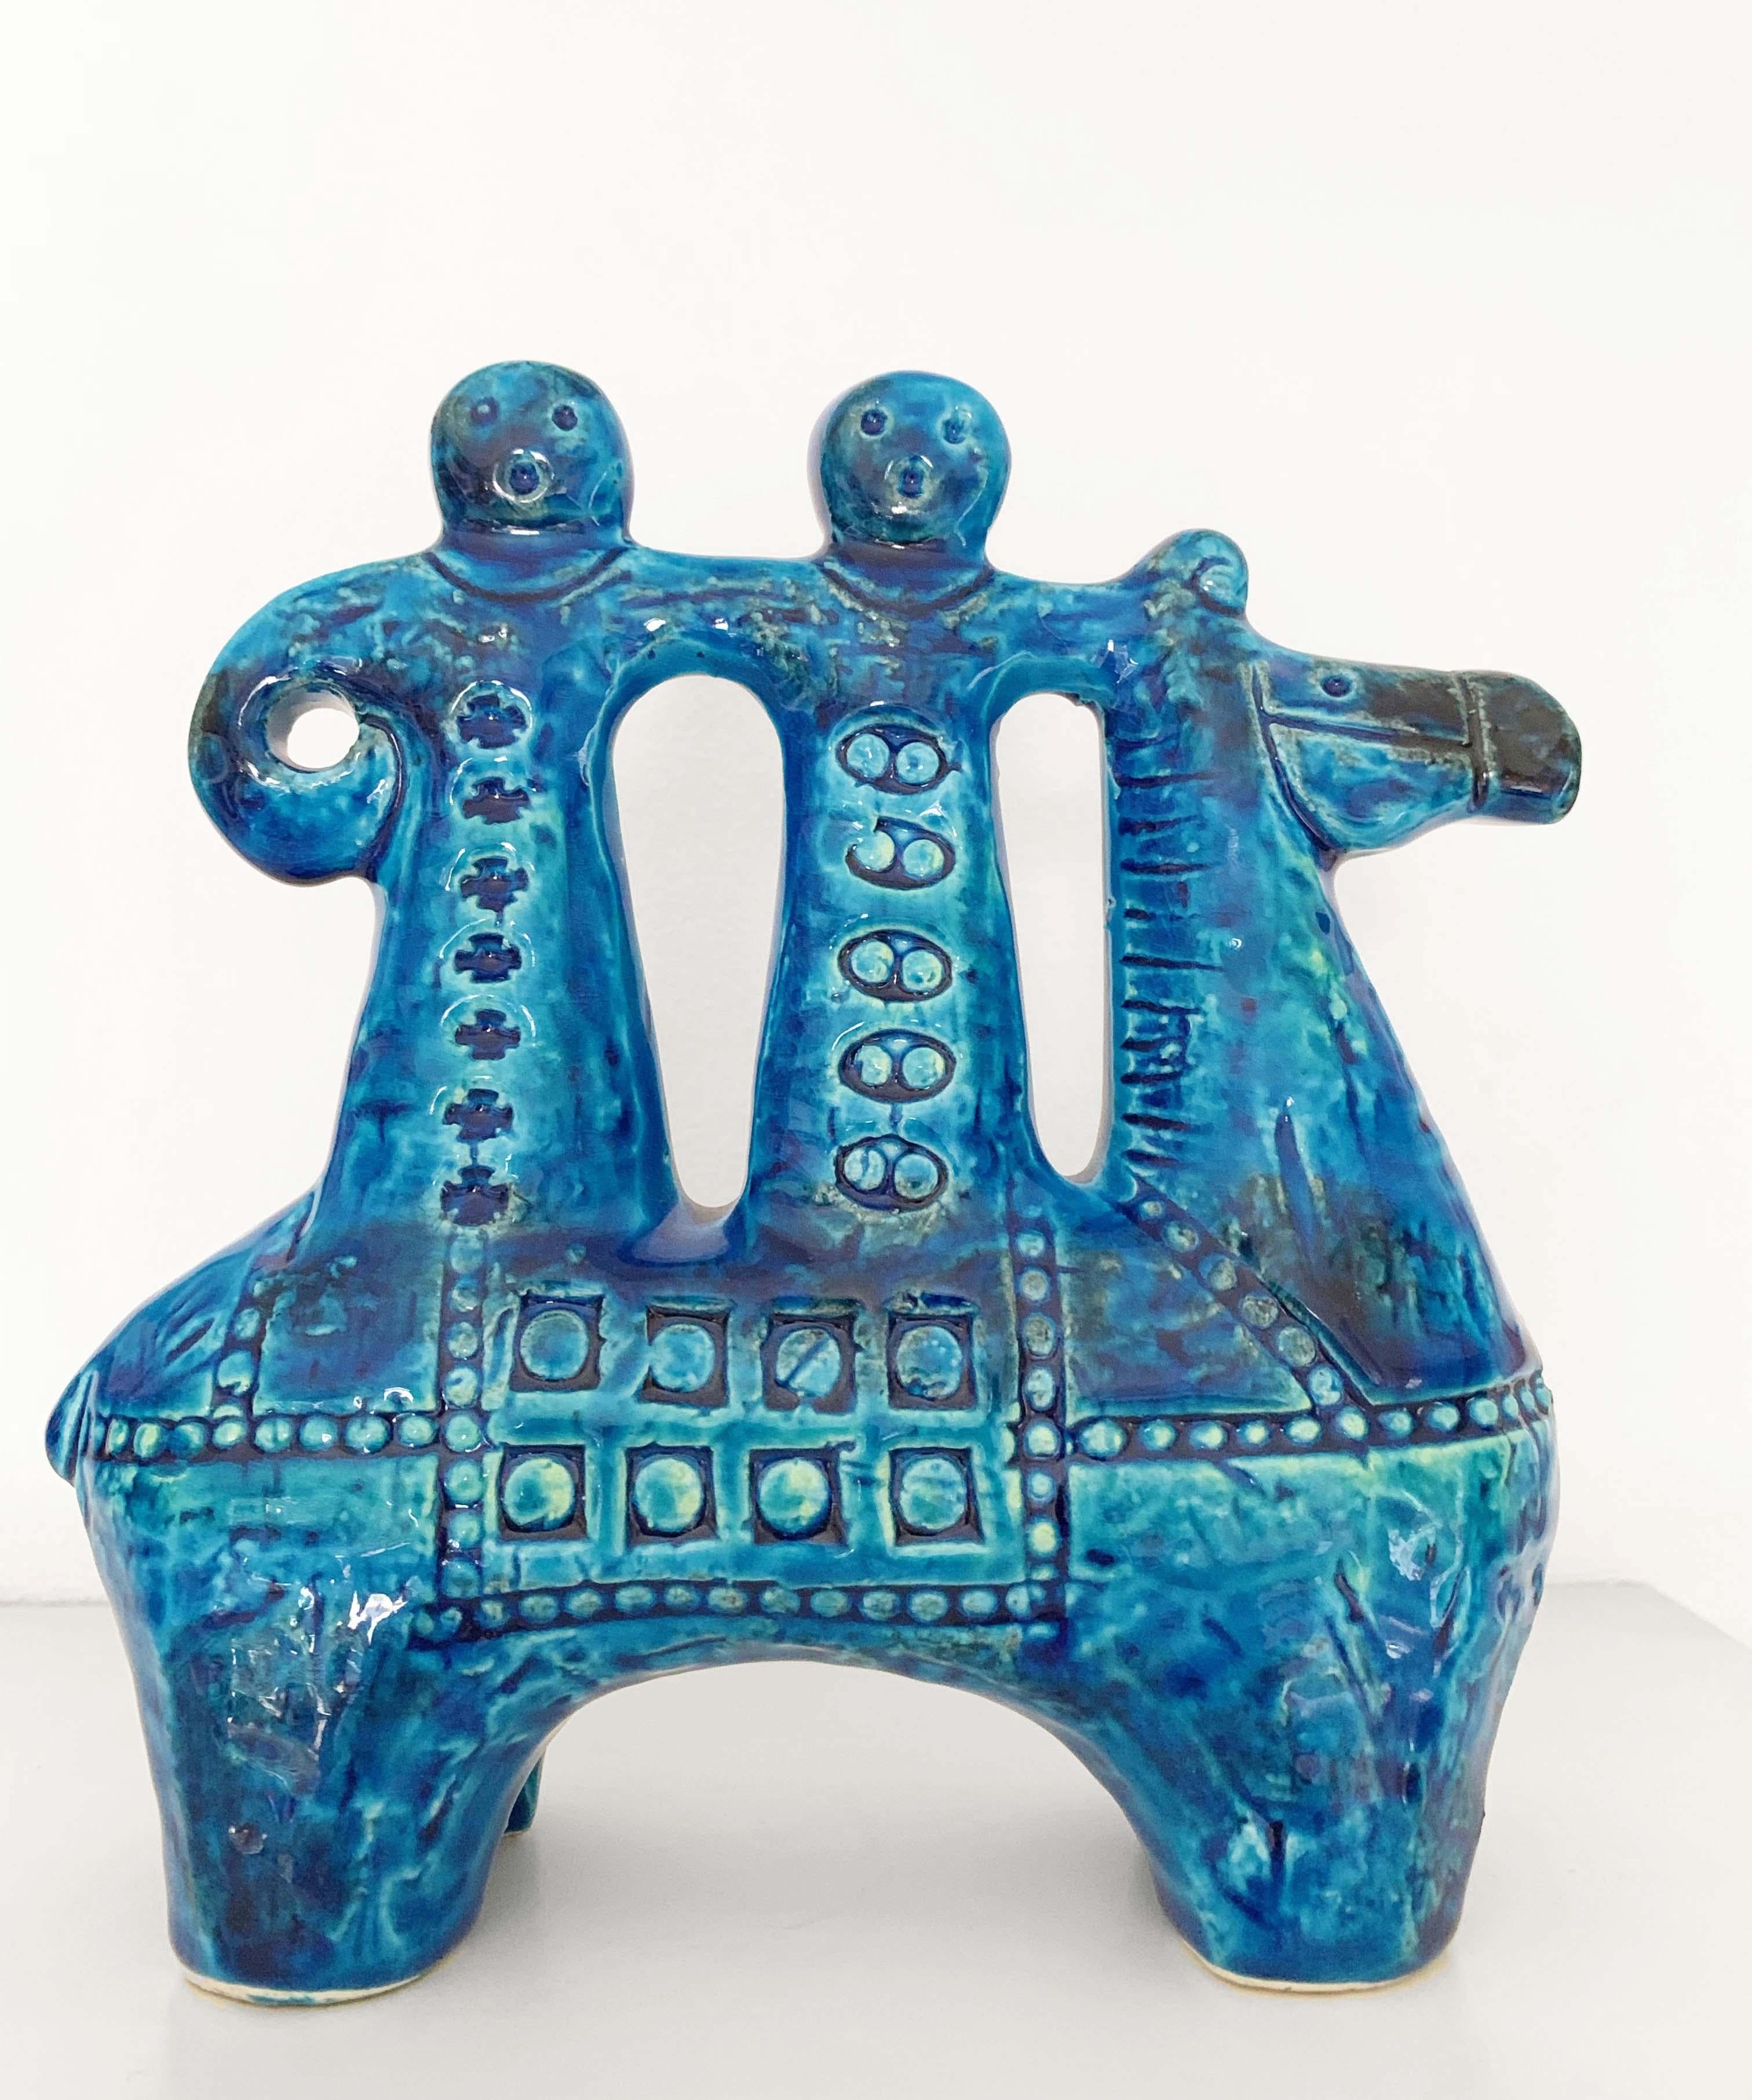 Aldo Londi for Bitossi Rimini Blue Figurine, Horse, Rider, Cavallerizzo Pottery 2